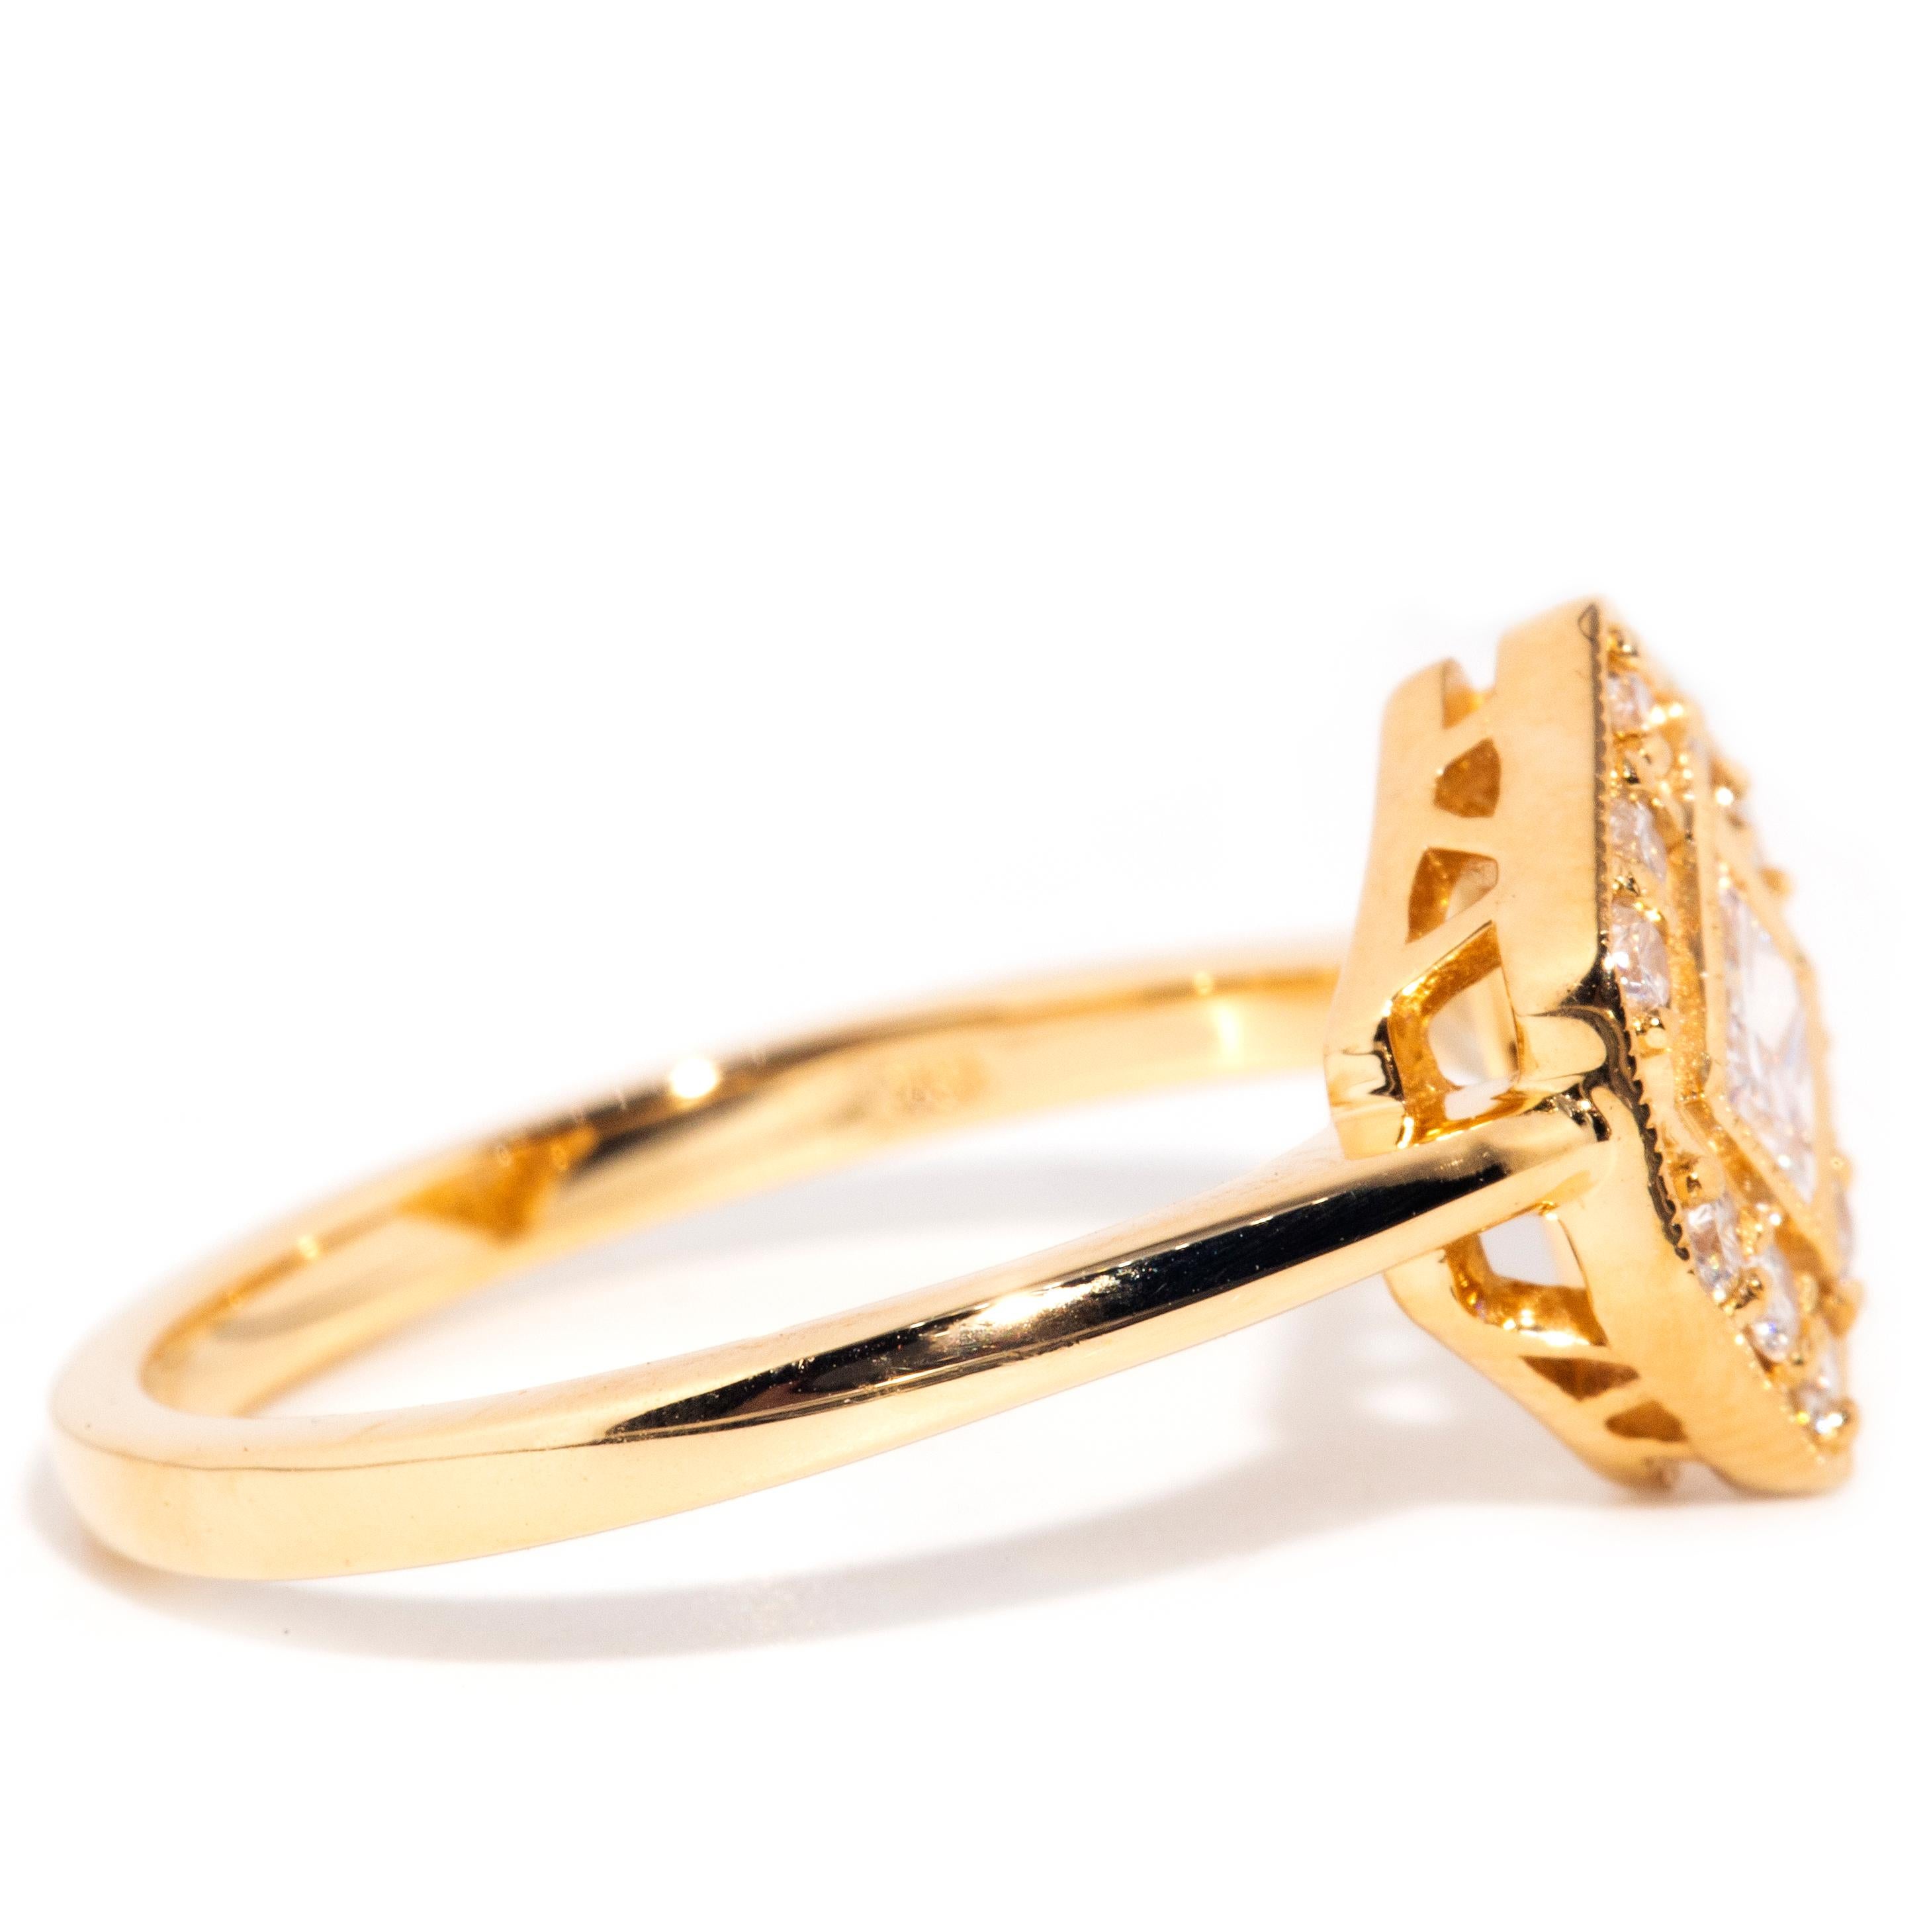 Contemporary 0.30 Carat Princess Cut Diamond 18 Carat Yellow Gold Cluster Ring 7